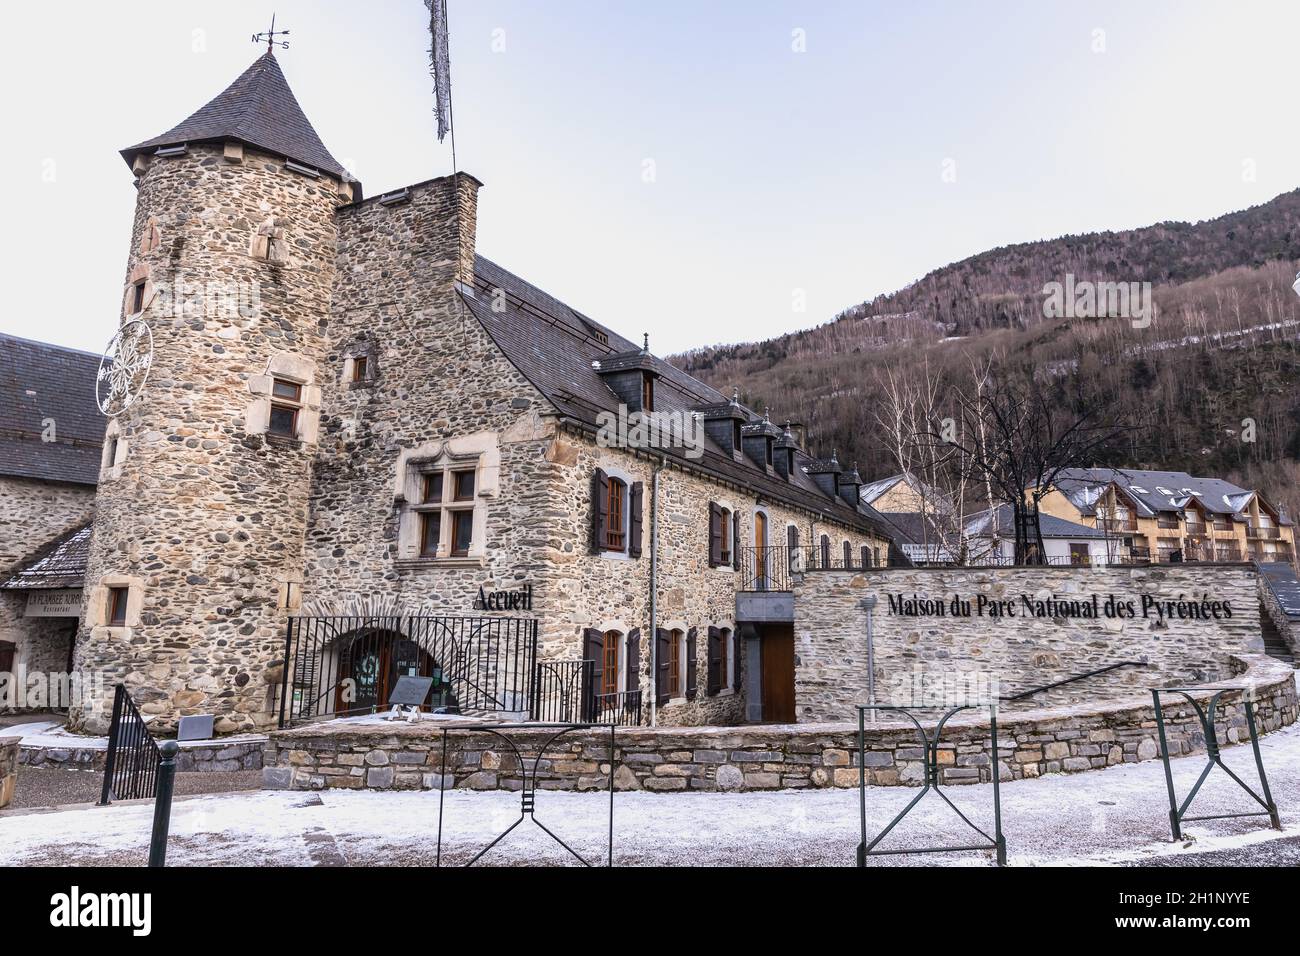 Saint Lary Soulan, France - December 26, 2020: architectural detail of the Maison Du Parc National Des Pyrenees (house of the Pyrenees National Park) Stock Photo